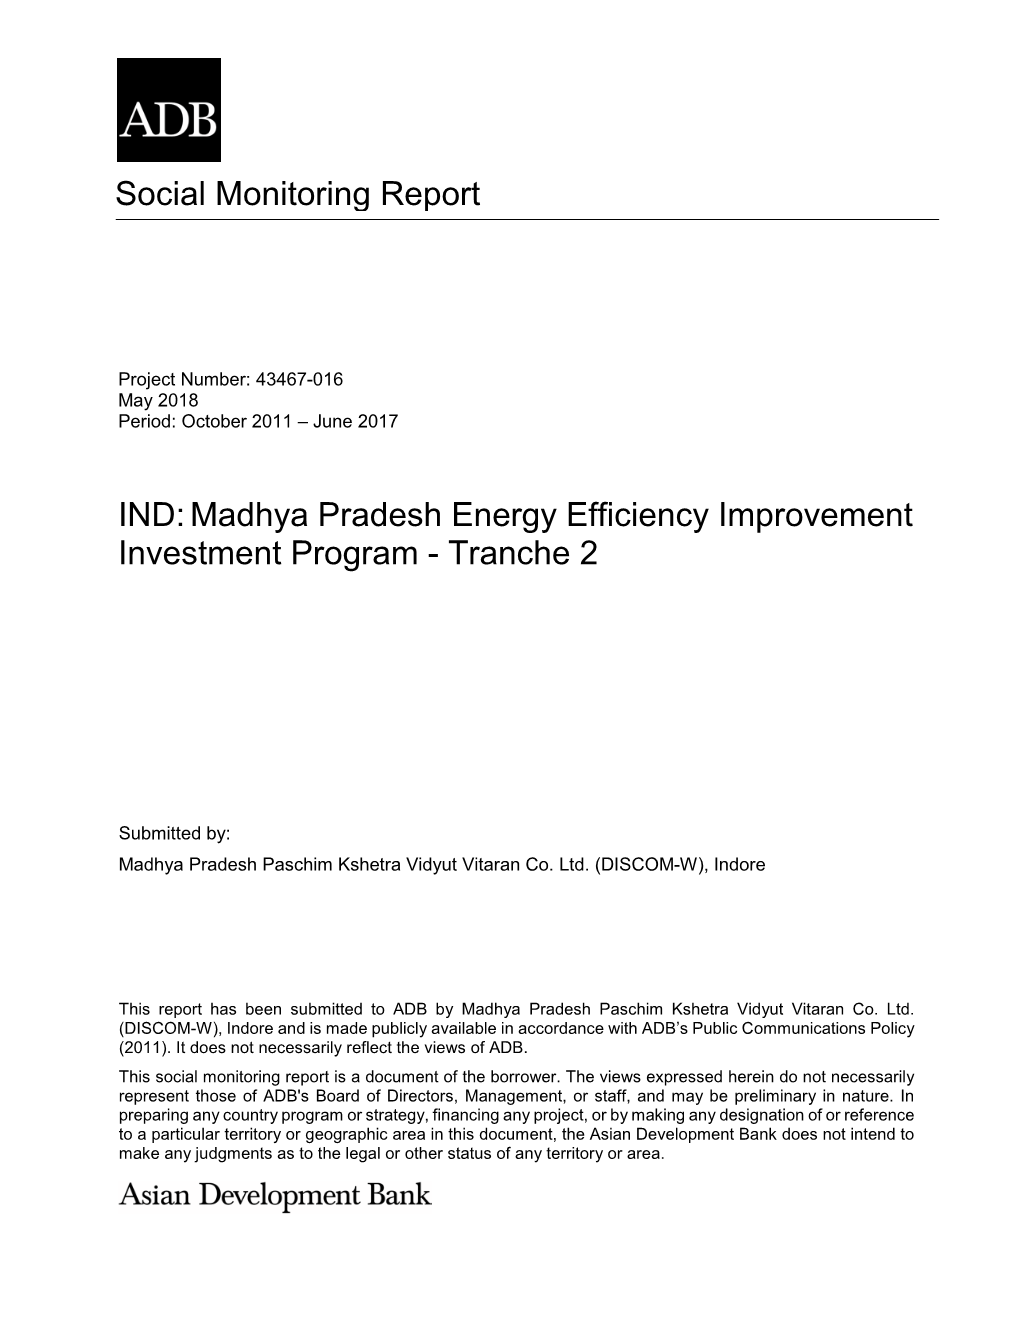 43467-016: Madhya Pradesh Energy Efficiency Improvement Investment Program